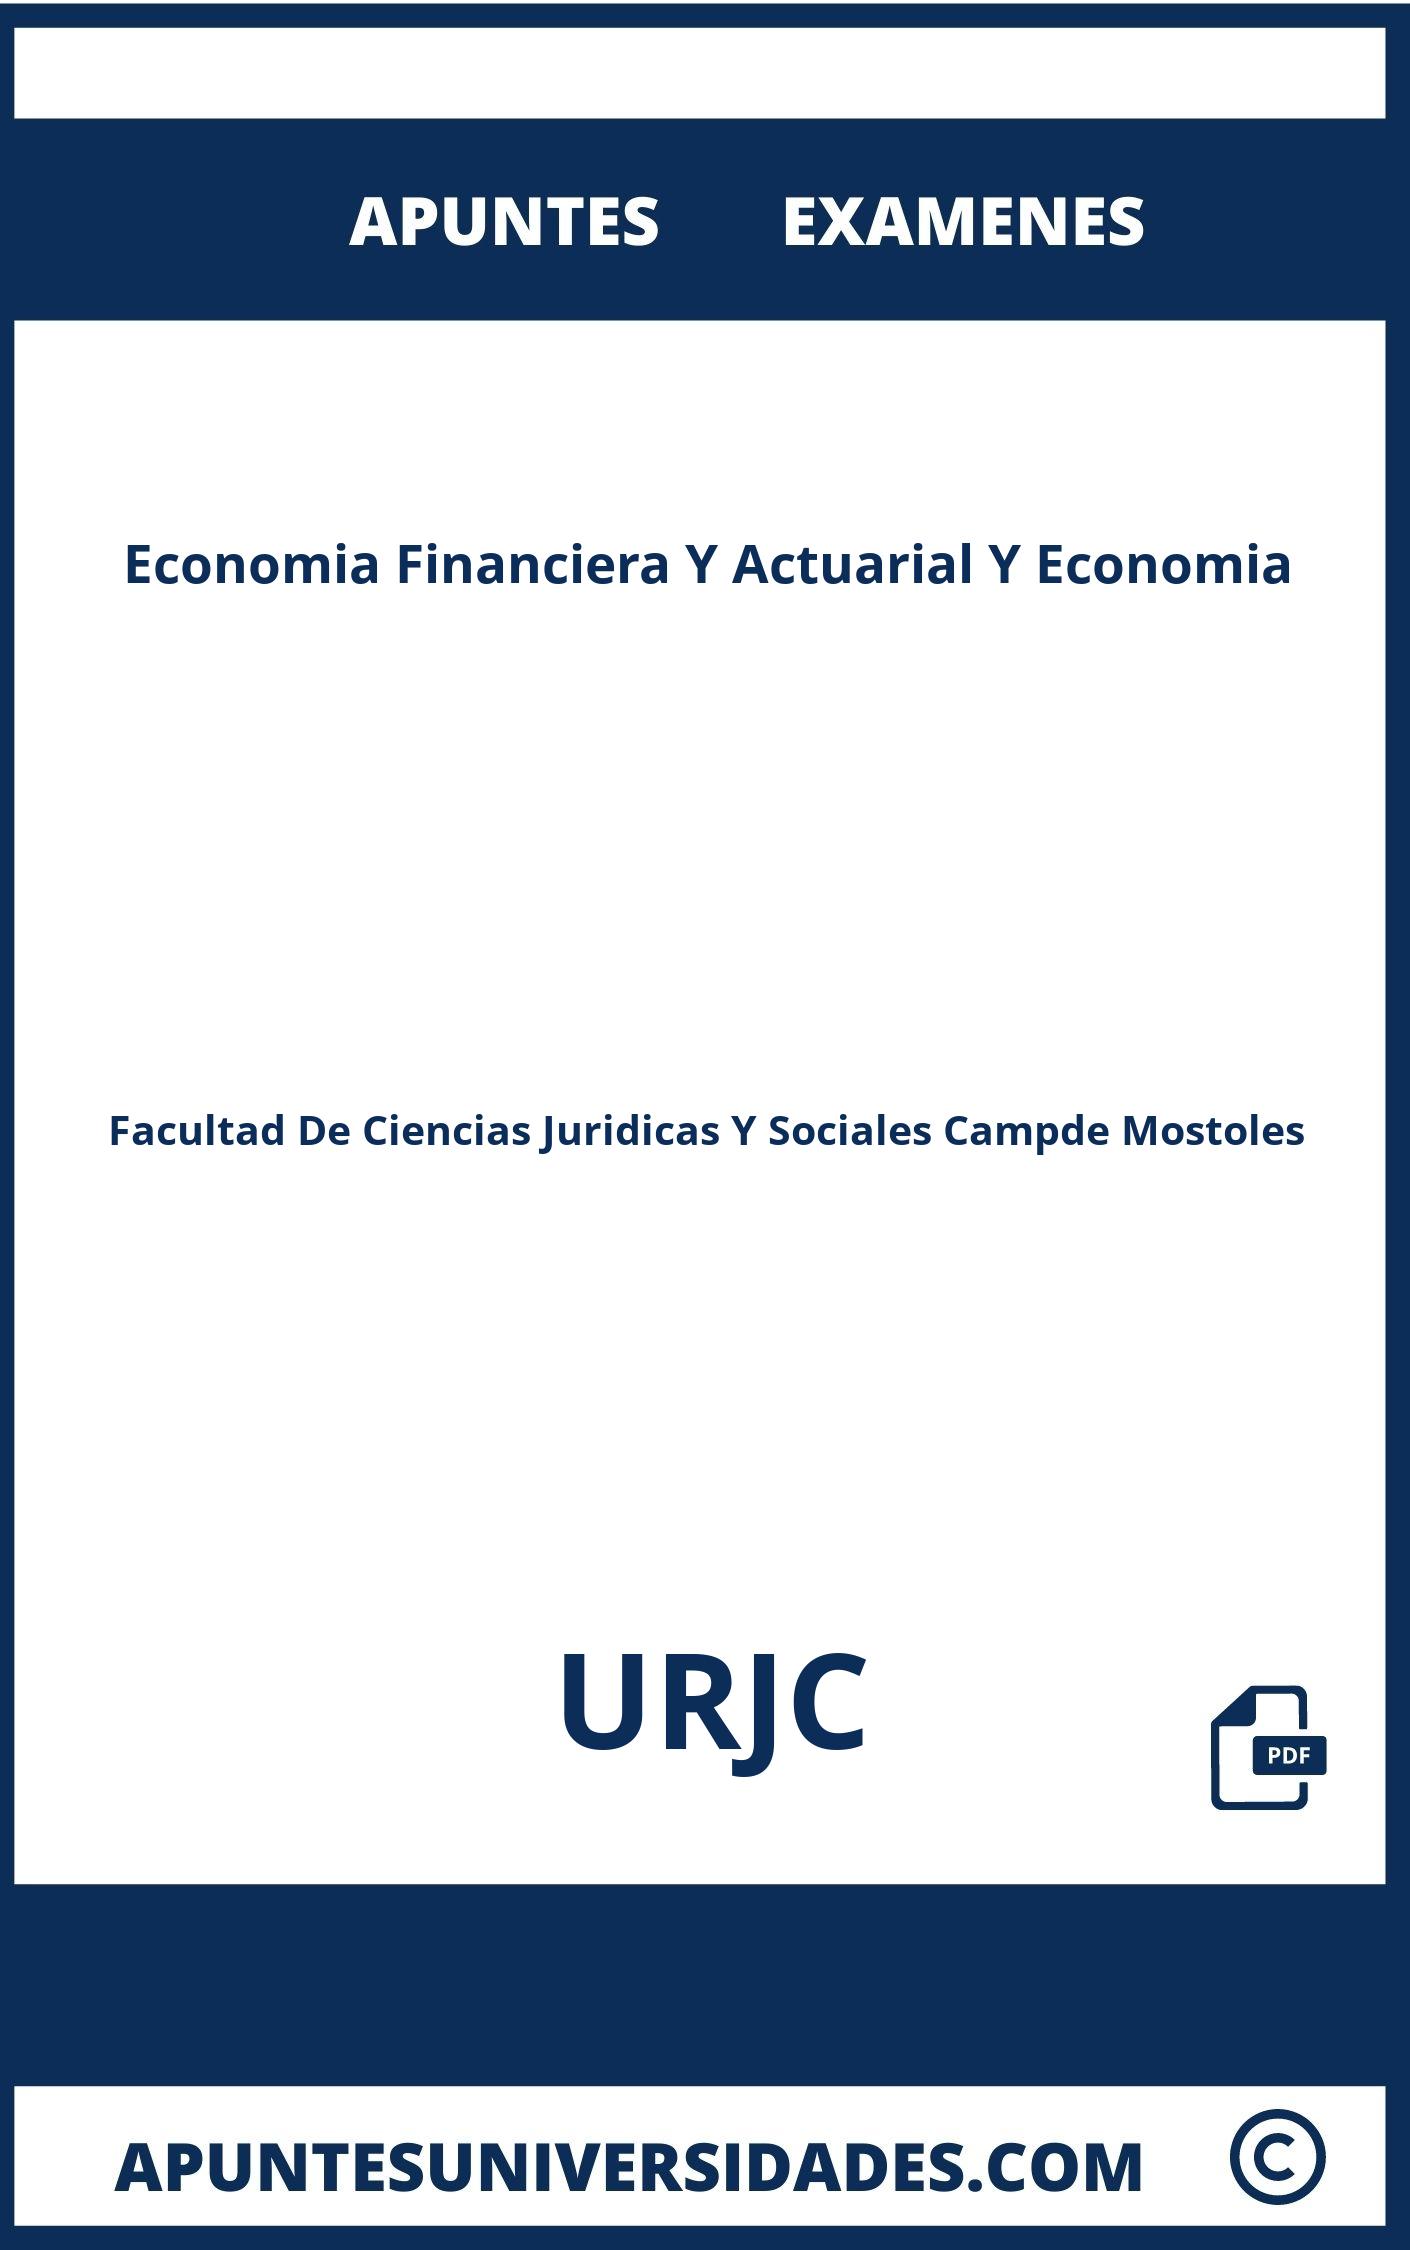 Examenes y Apuntes Economia Financiera Y Actuarial Y Economia URJC